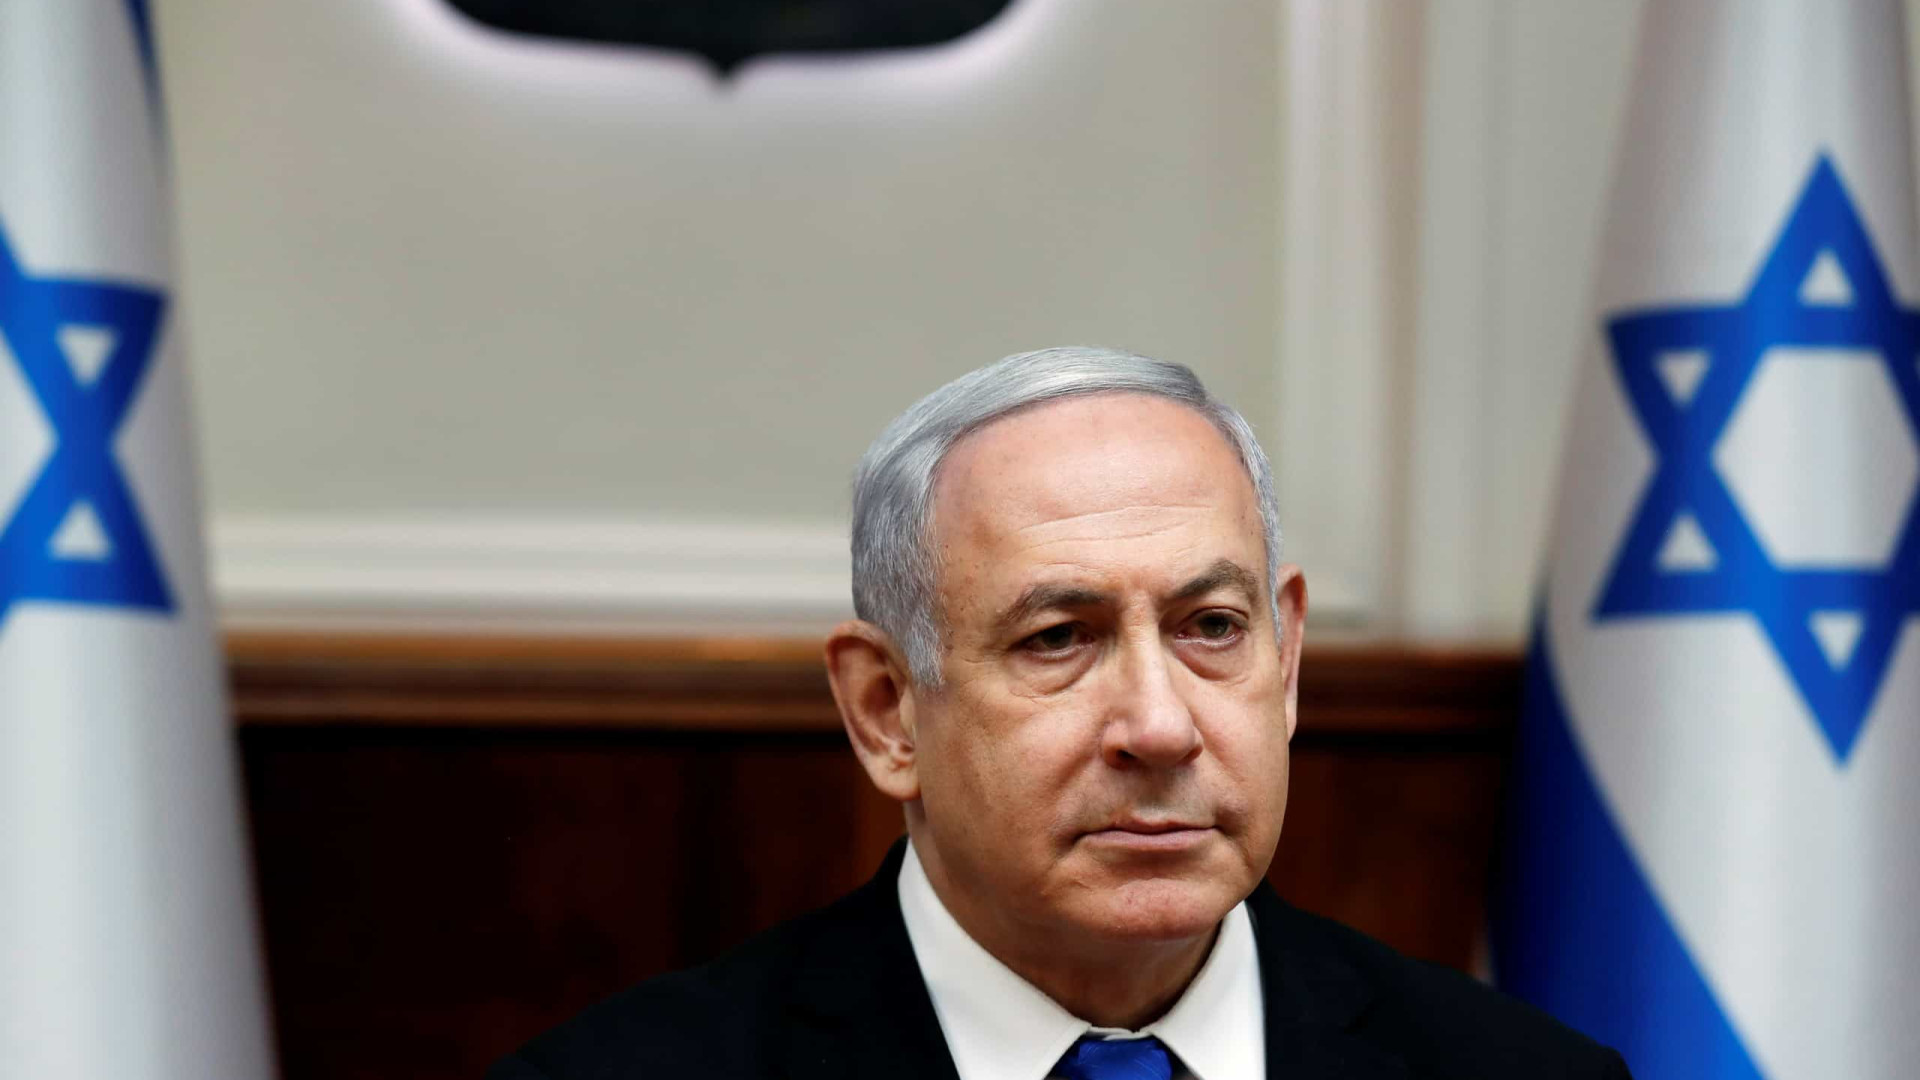 Netanyahu recua de demissão de ministro que criticou reforma judicial em Israel